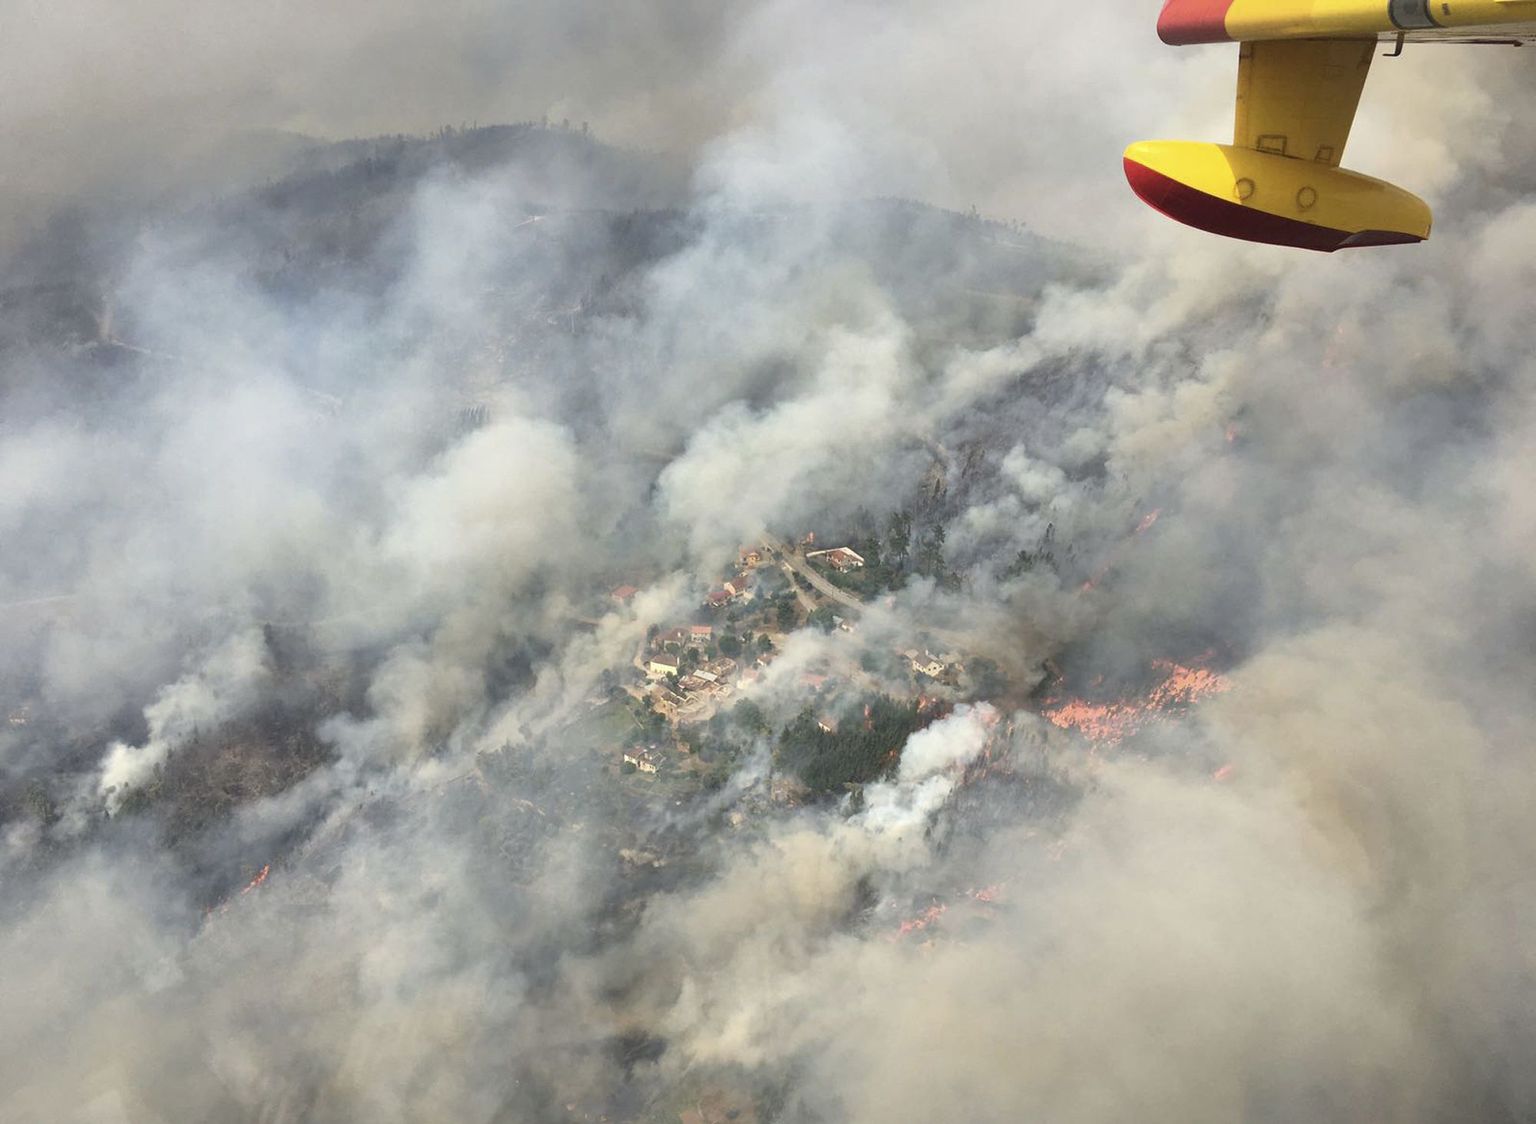 Portugalile appi tõtanud naaberriigi Hispaania tuletõrje lennukist tehtud fotol on näha leekidest ümbritsetud Pedrógão Grande linnake.